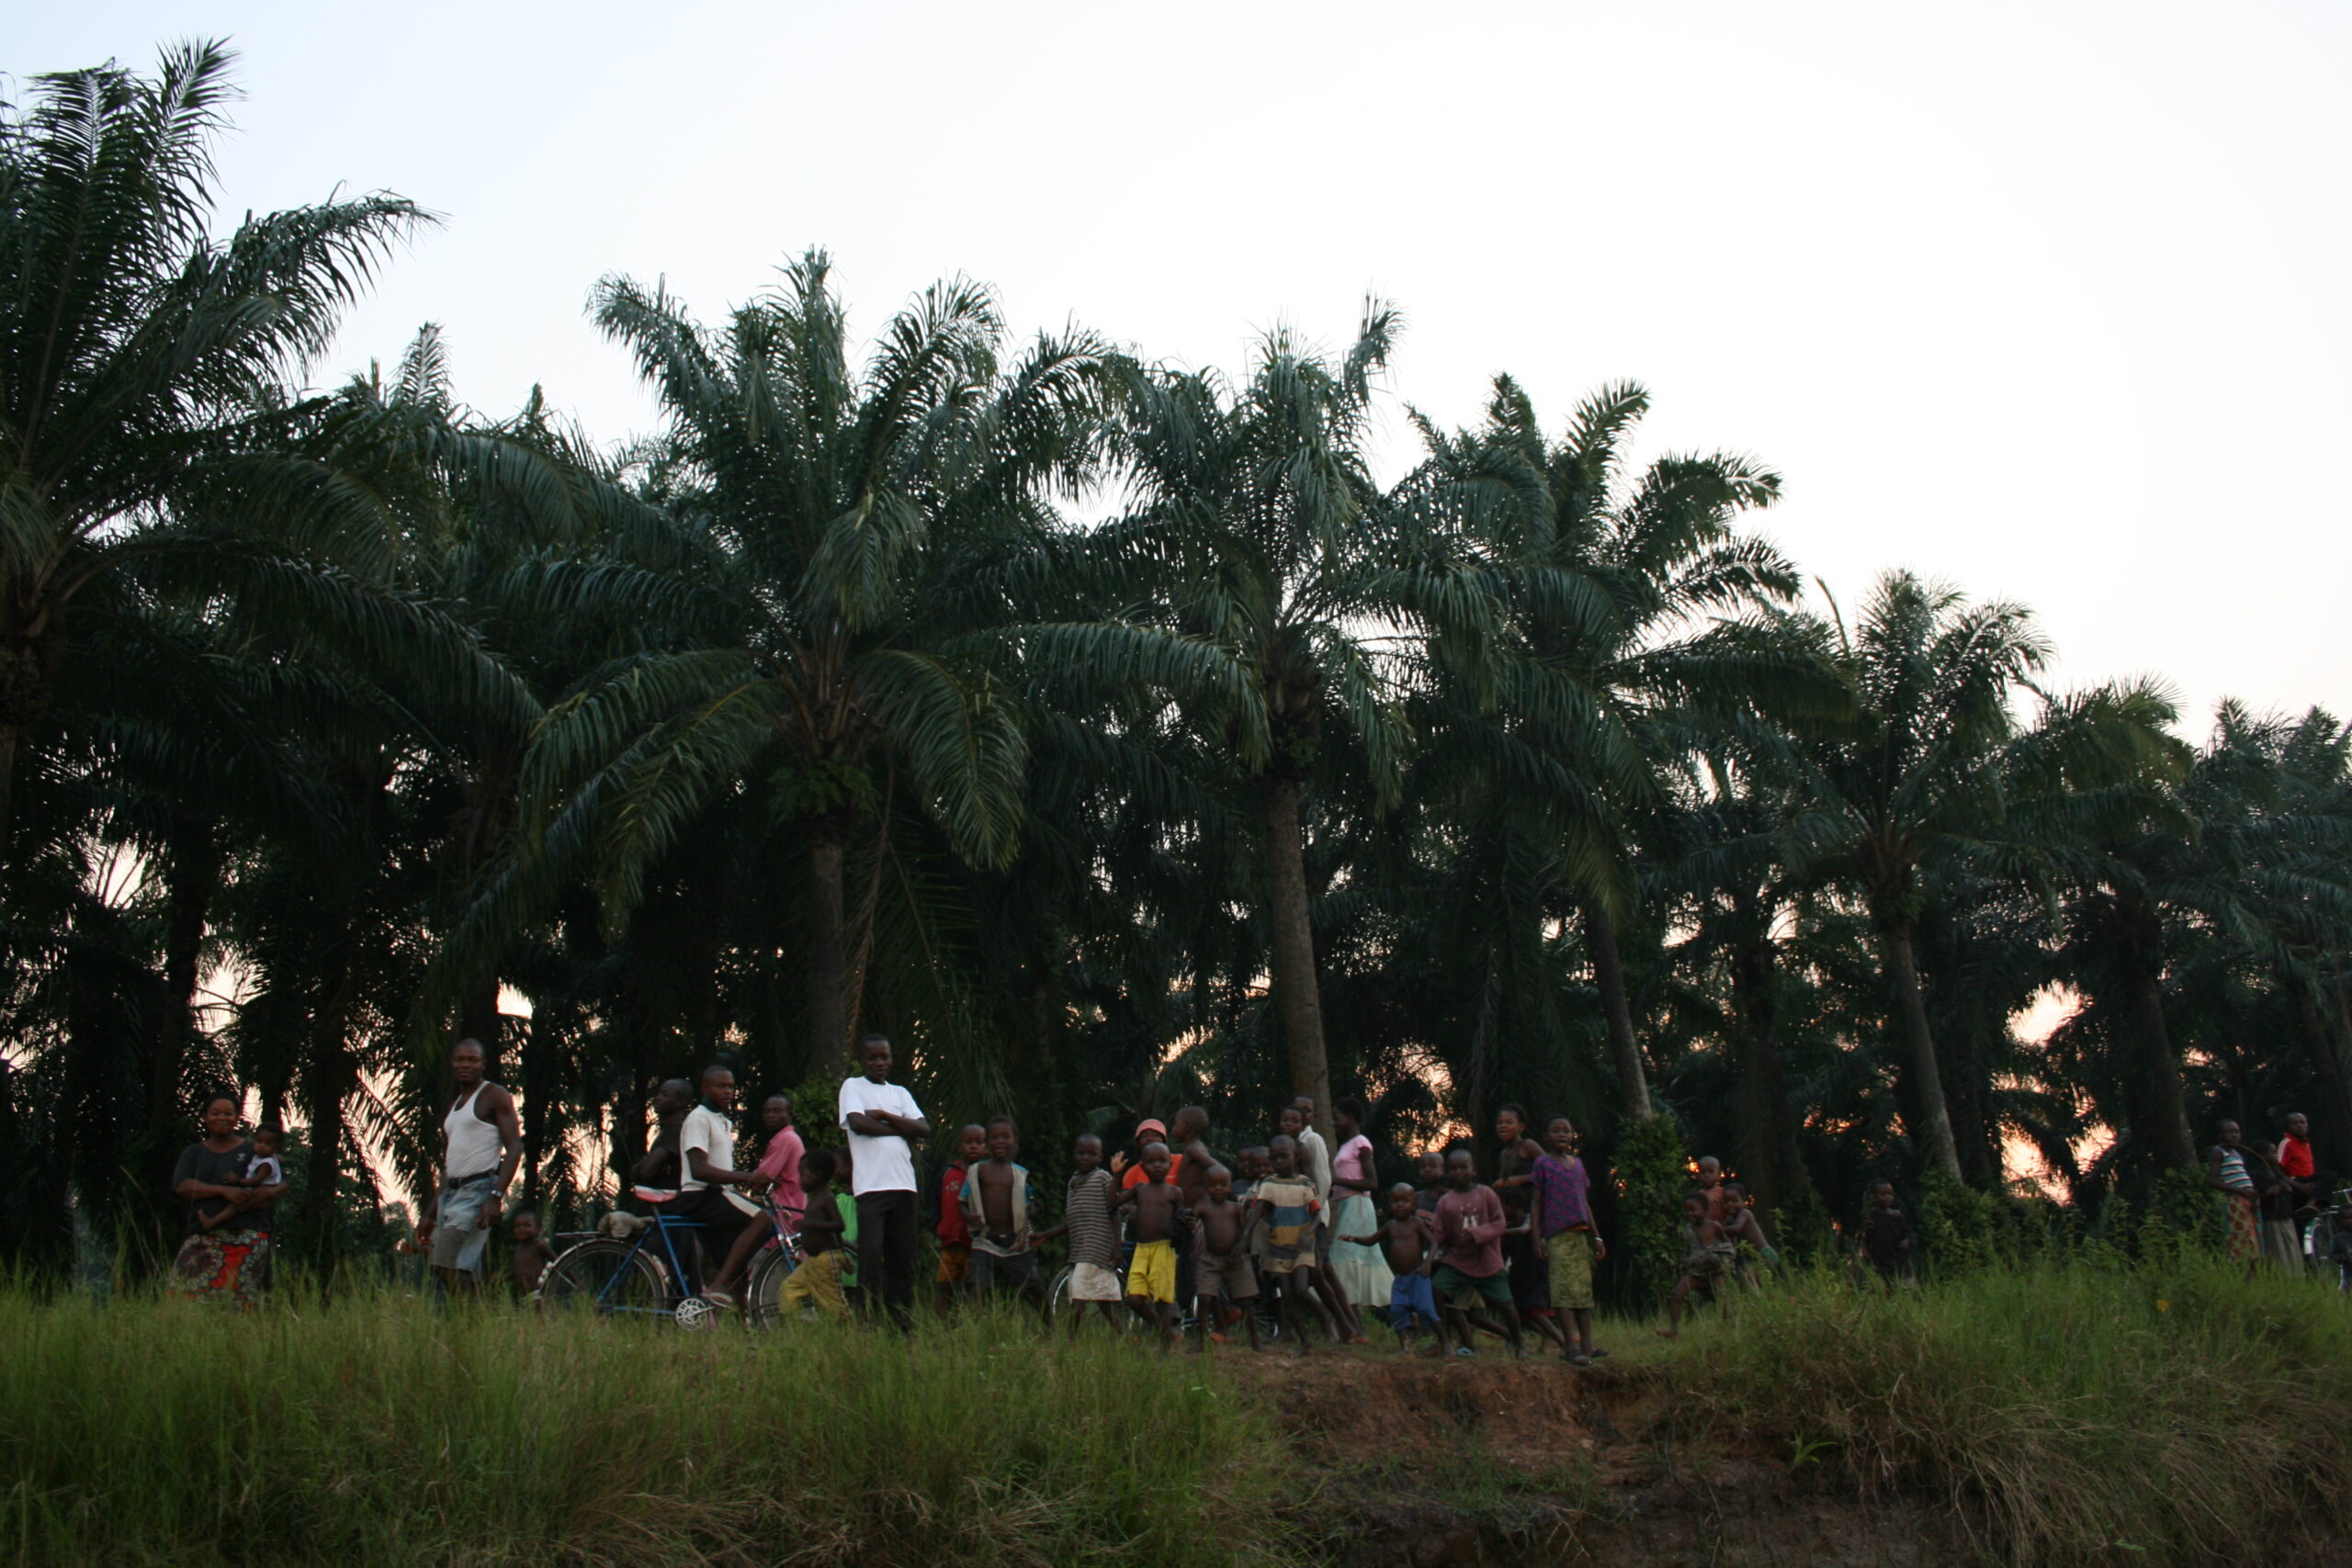 Children in Isangi village